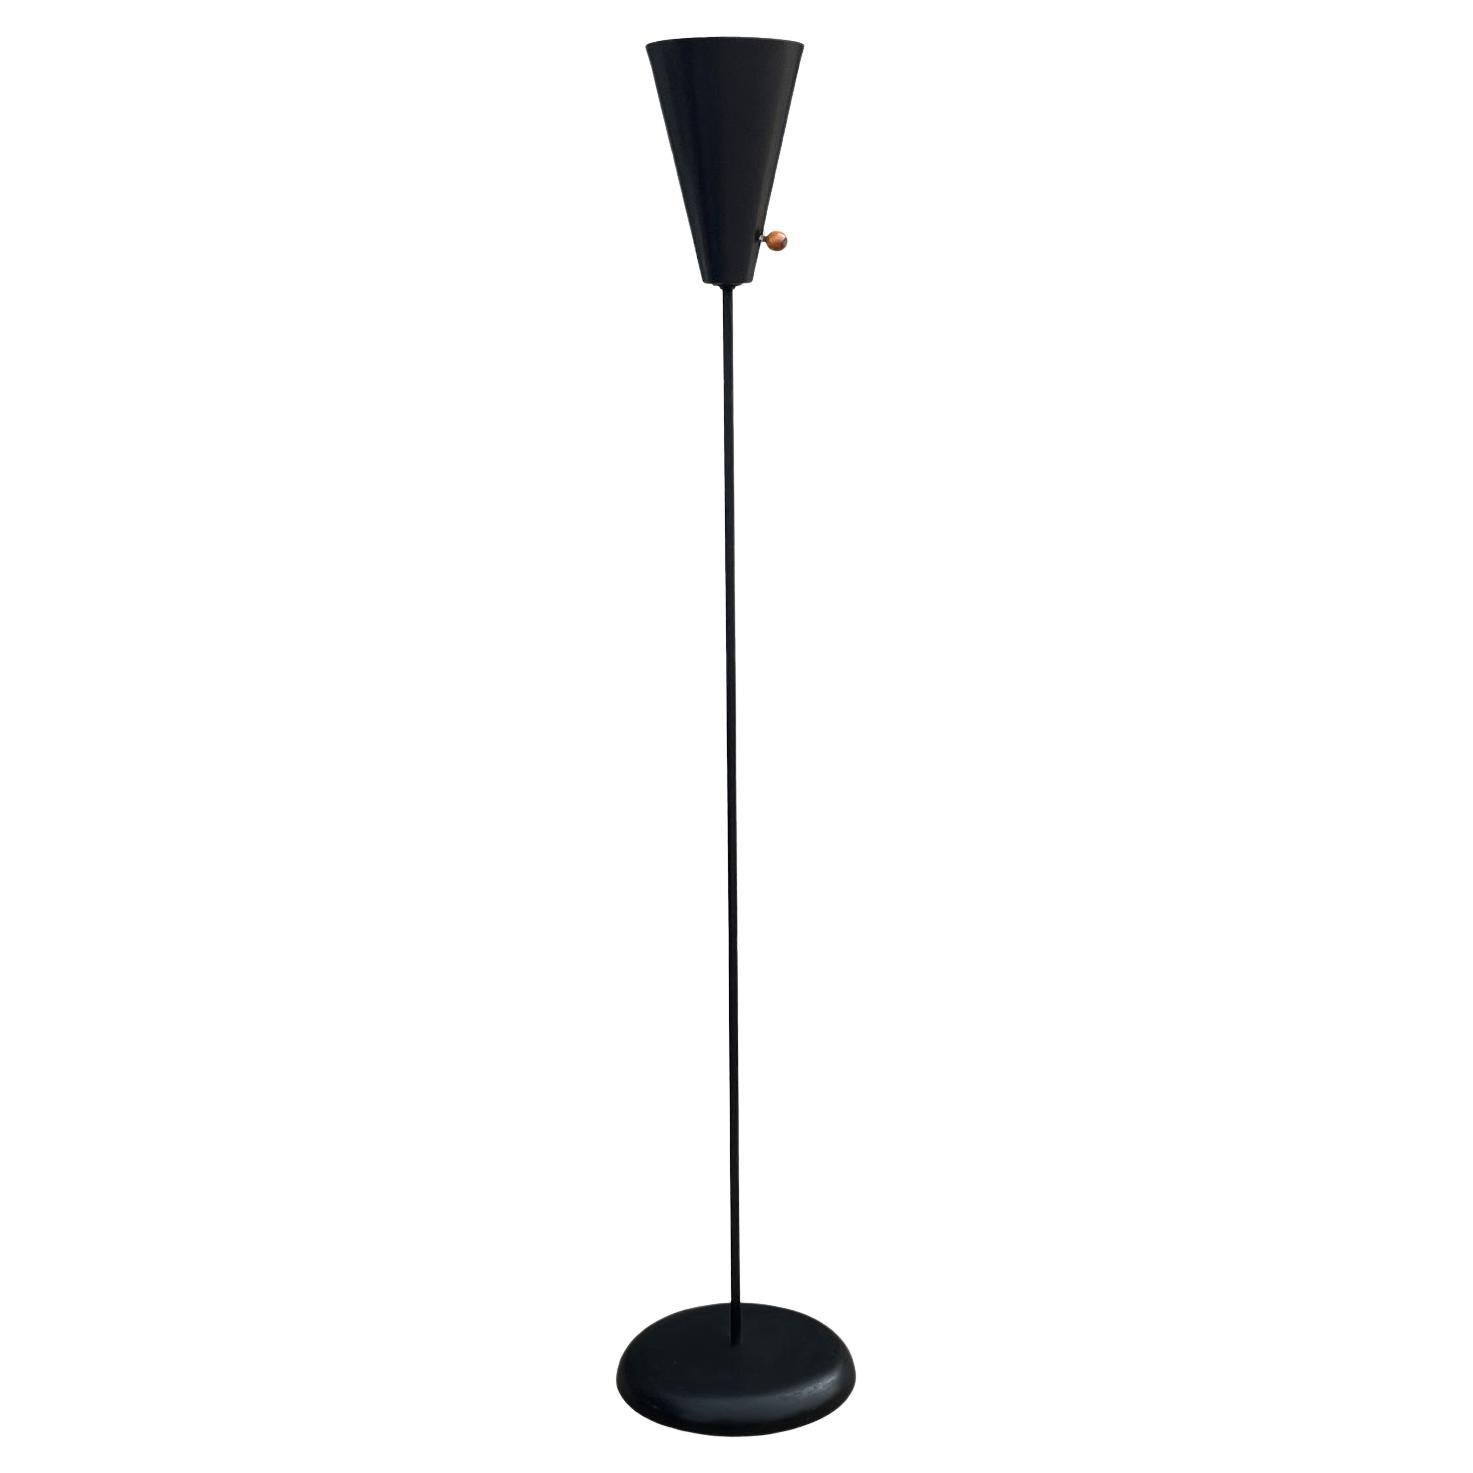 Funky Mid Century Modern Black Enamel Floor Lamp by David Wurster for Raymor For Sale